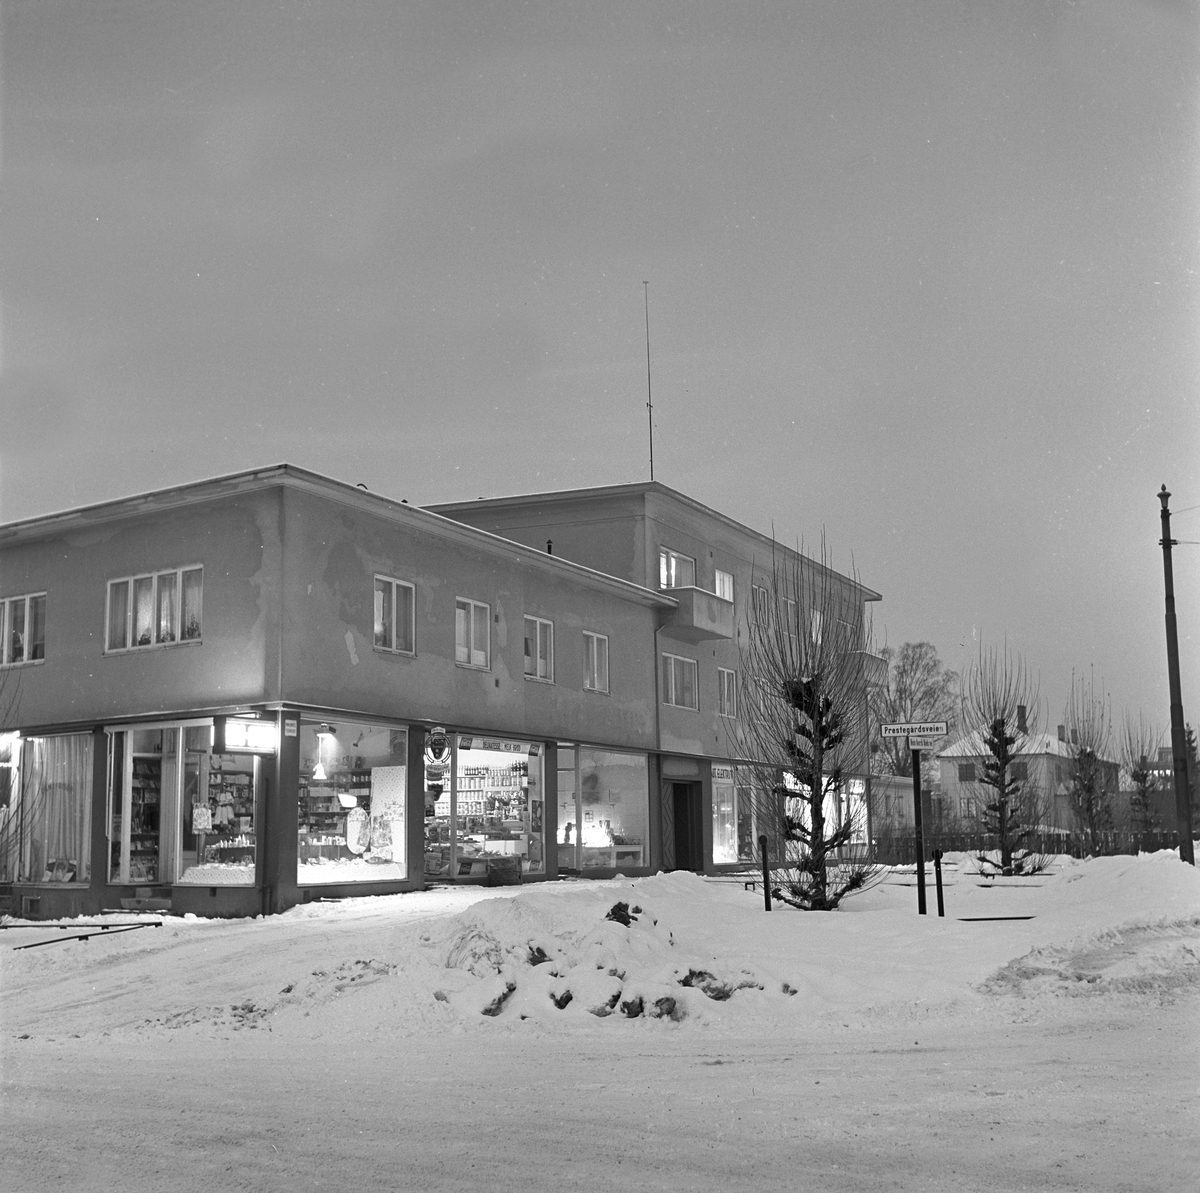 Serie. Området rundt universitetet på Blindern, Oslo. Fotografert 17.jan. 1962.
